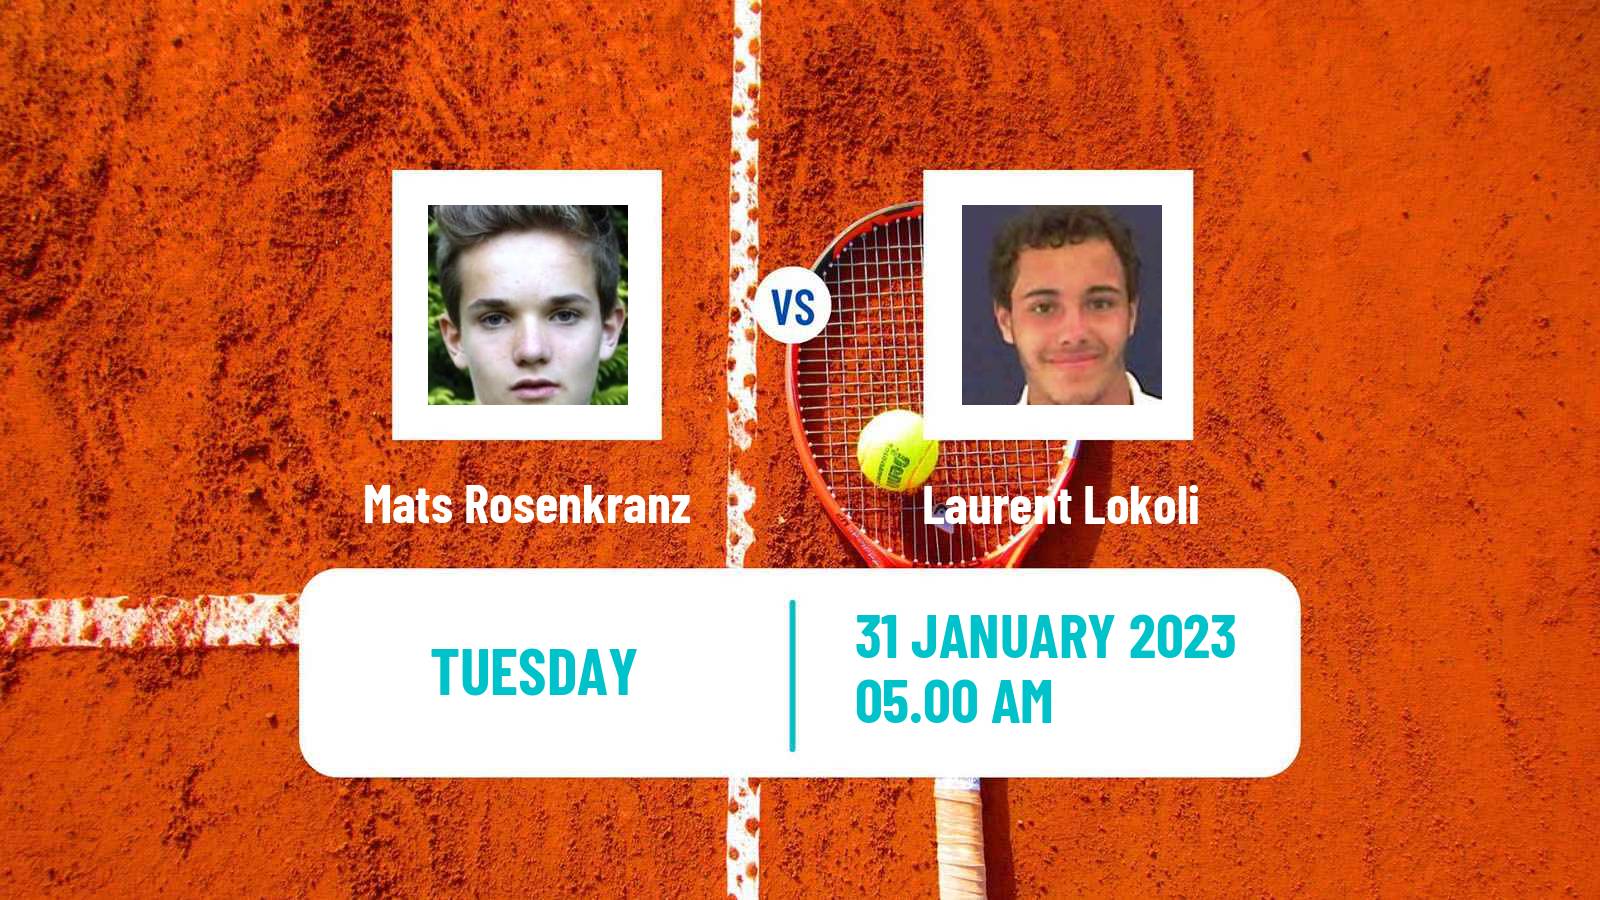 Tennis ATP Challenger Mats Rosenkranz - Laurent Lokoli